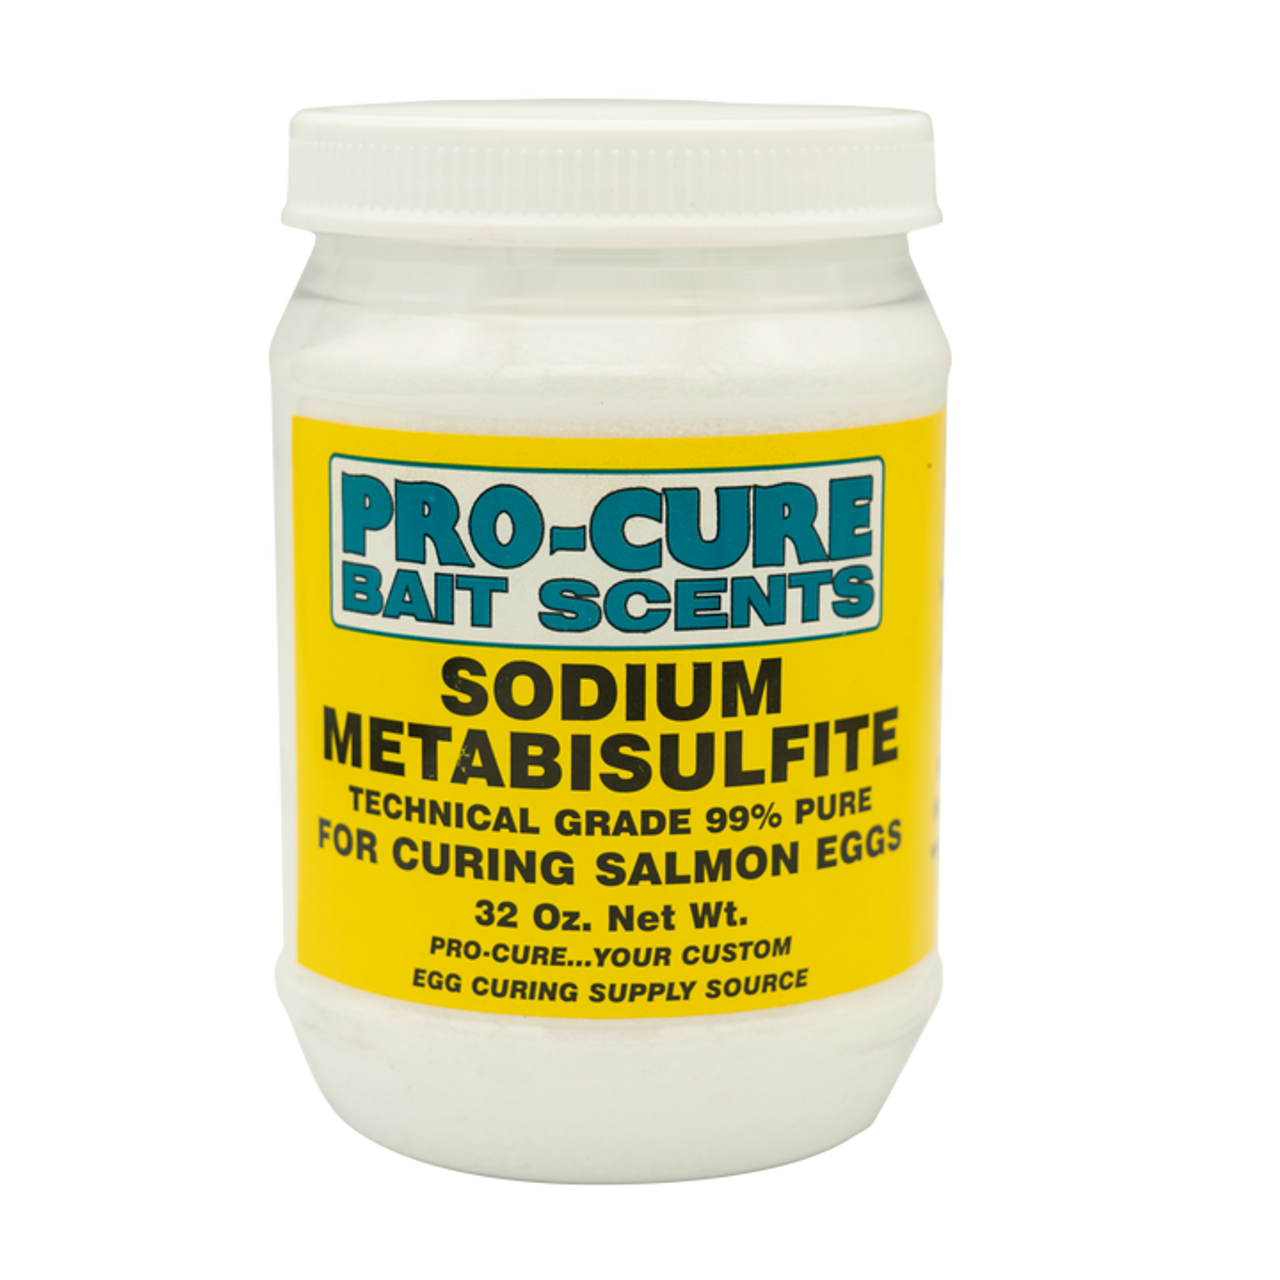 Pro-Cure Sodium Metabisulfite 2LB